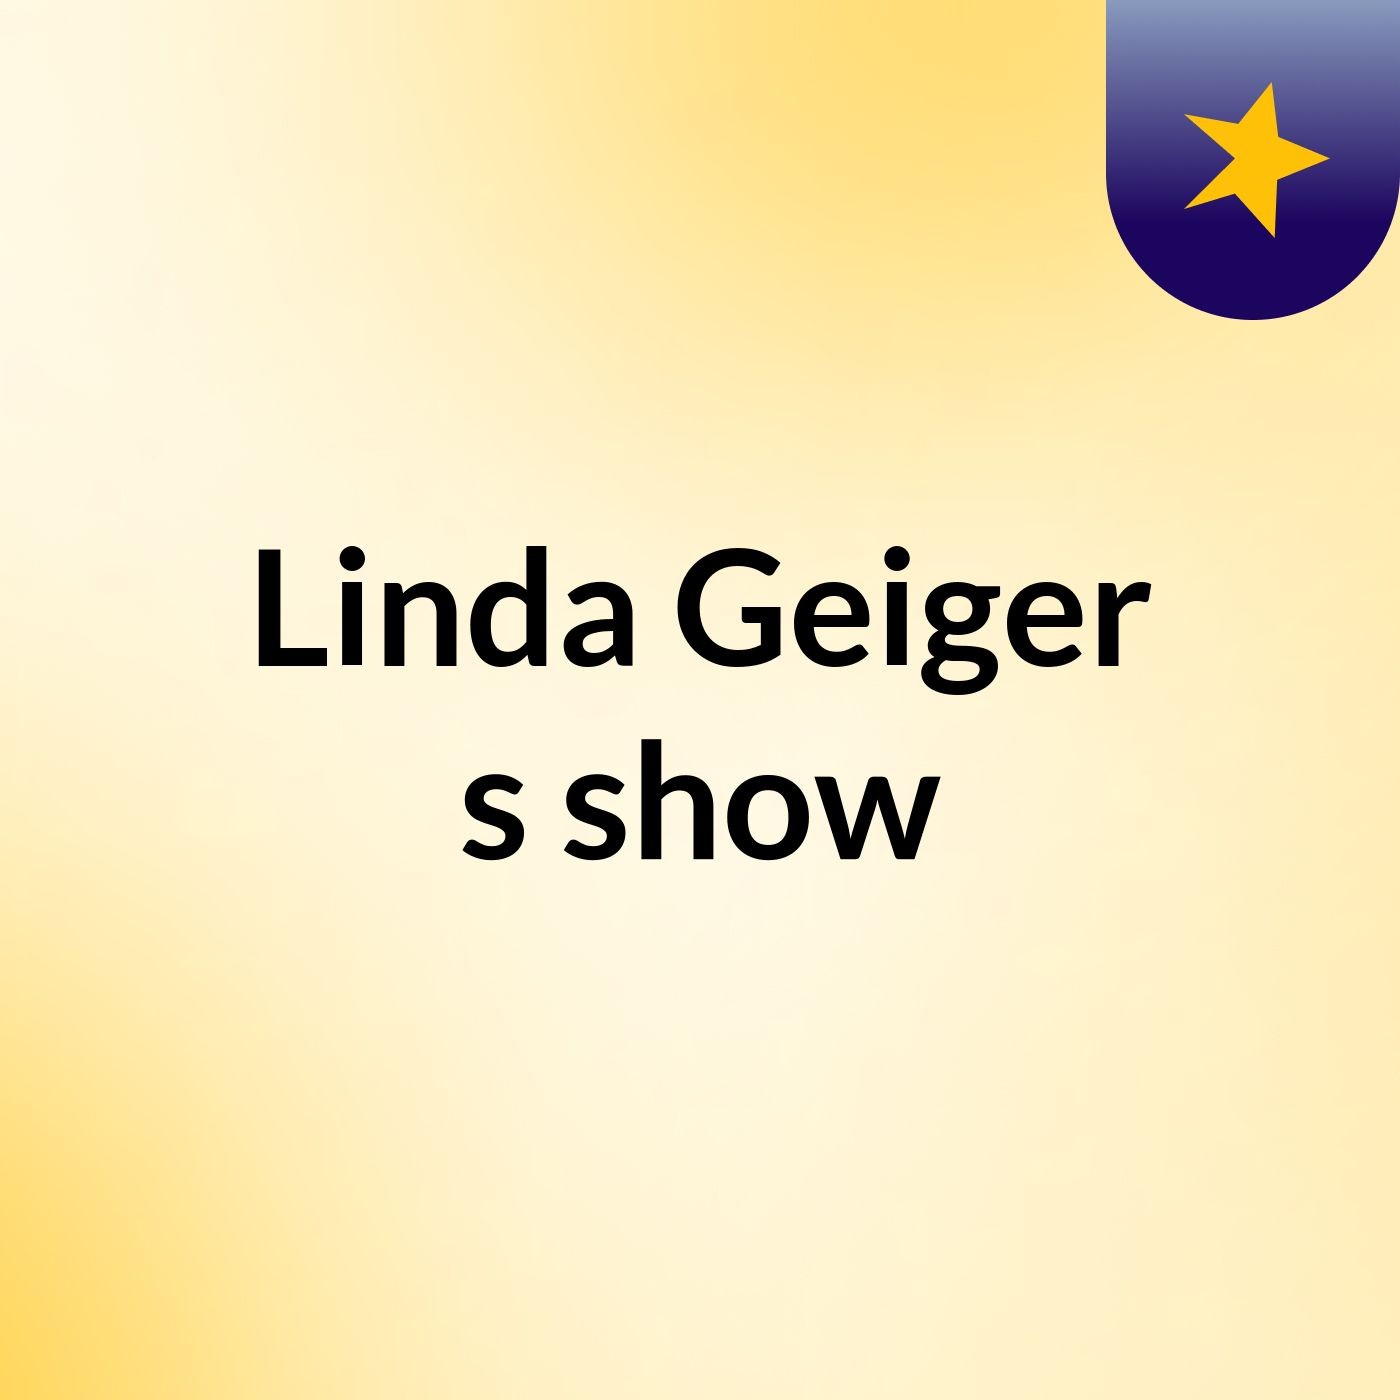 Linda Geiger's show